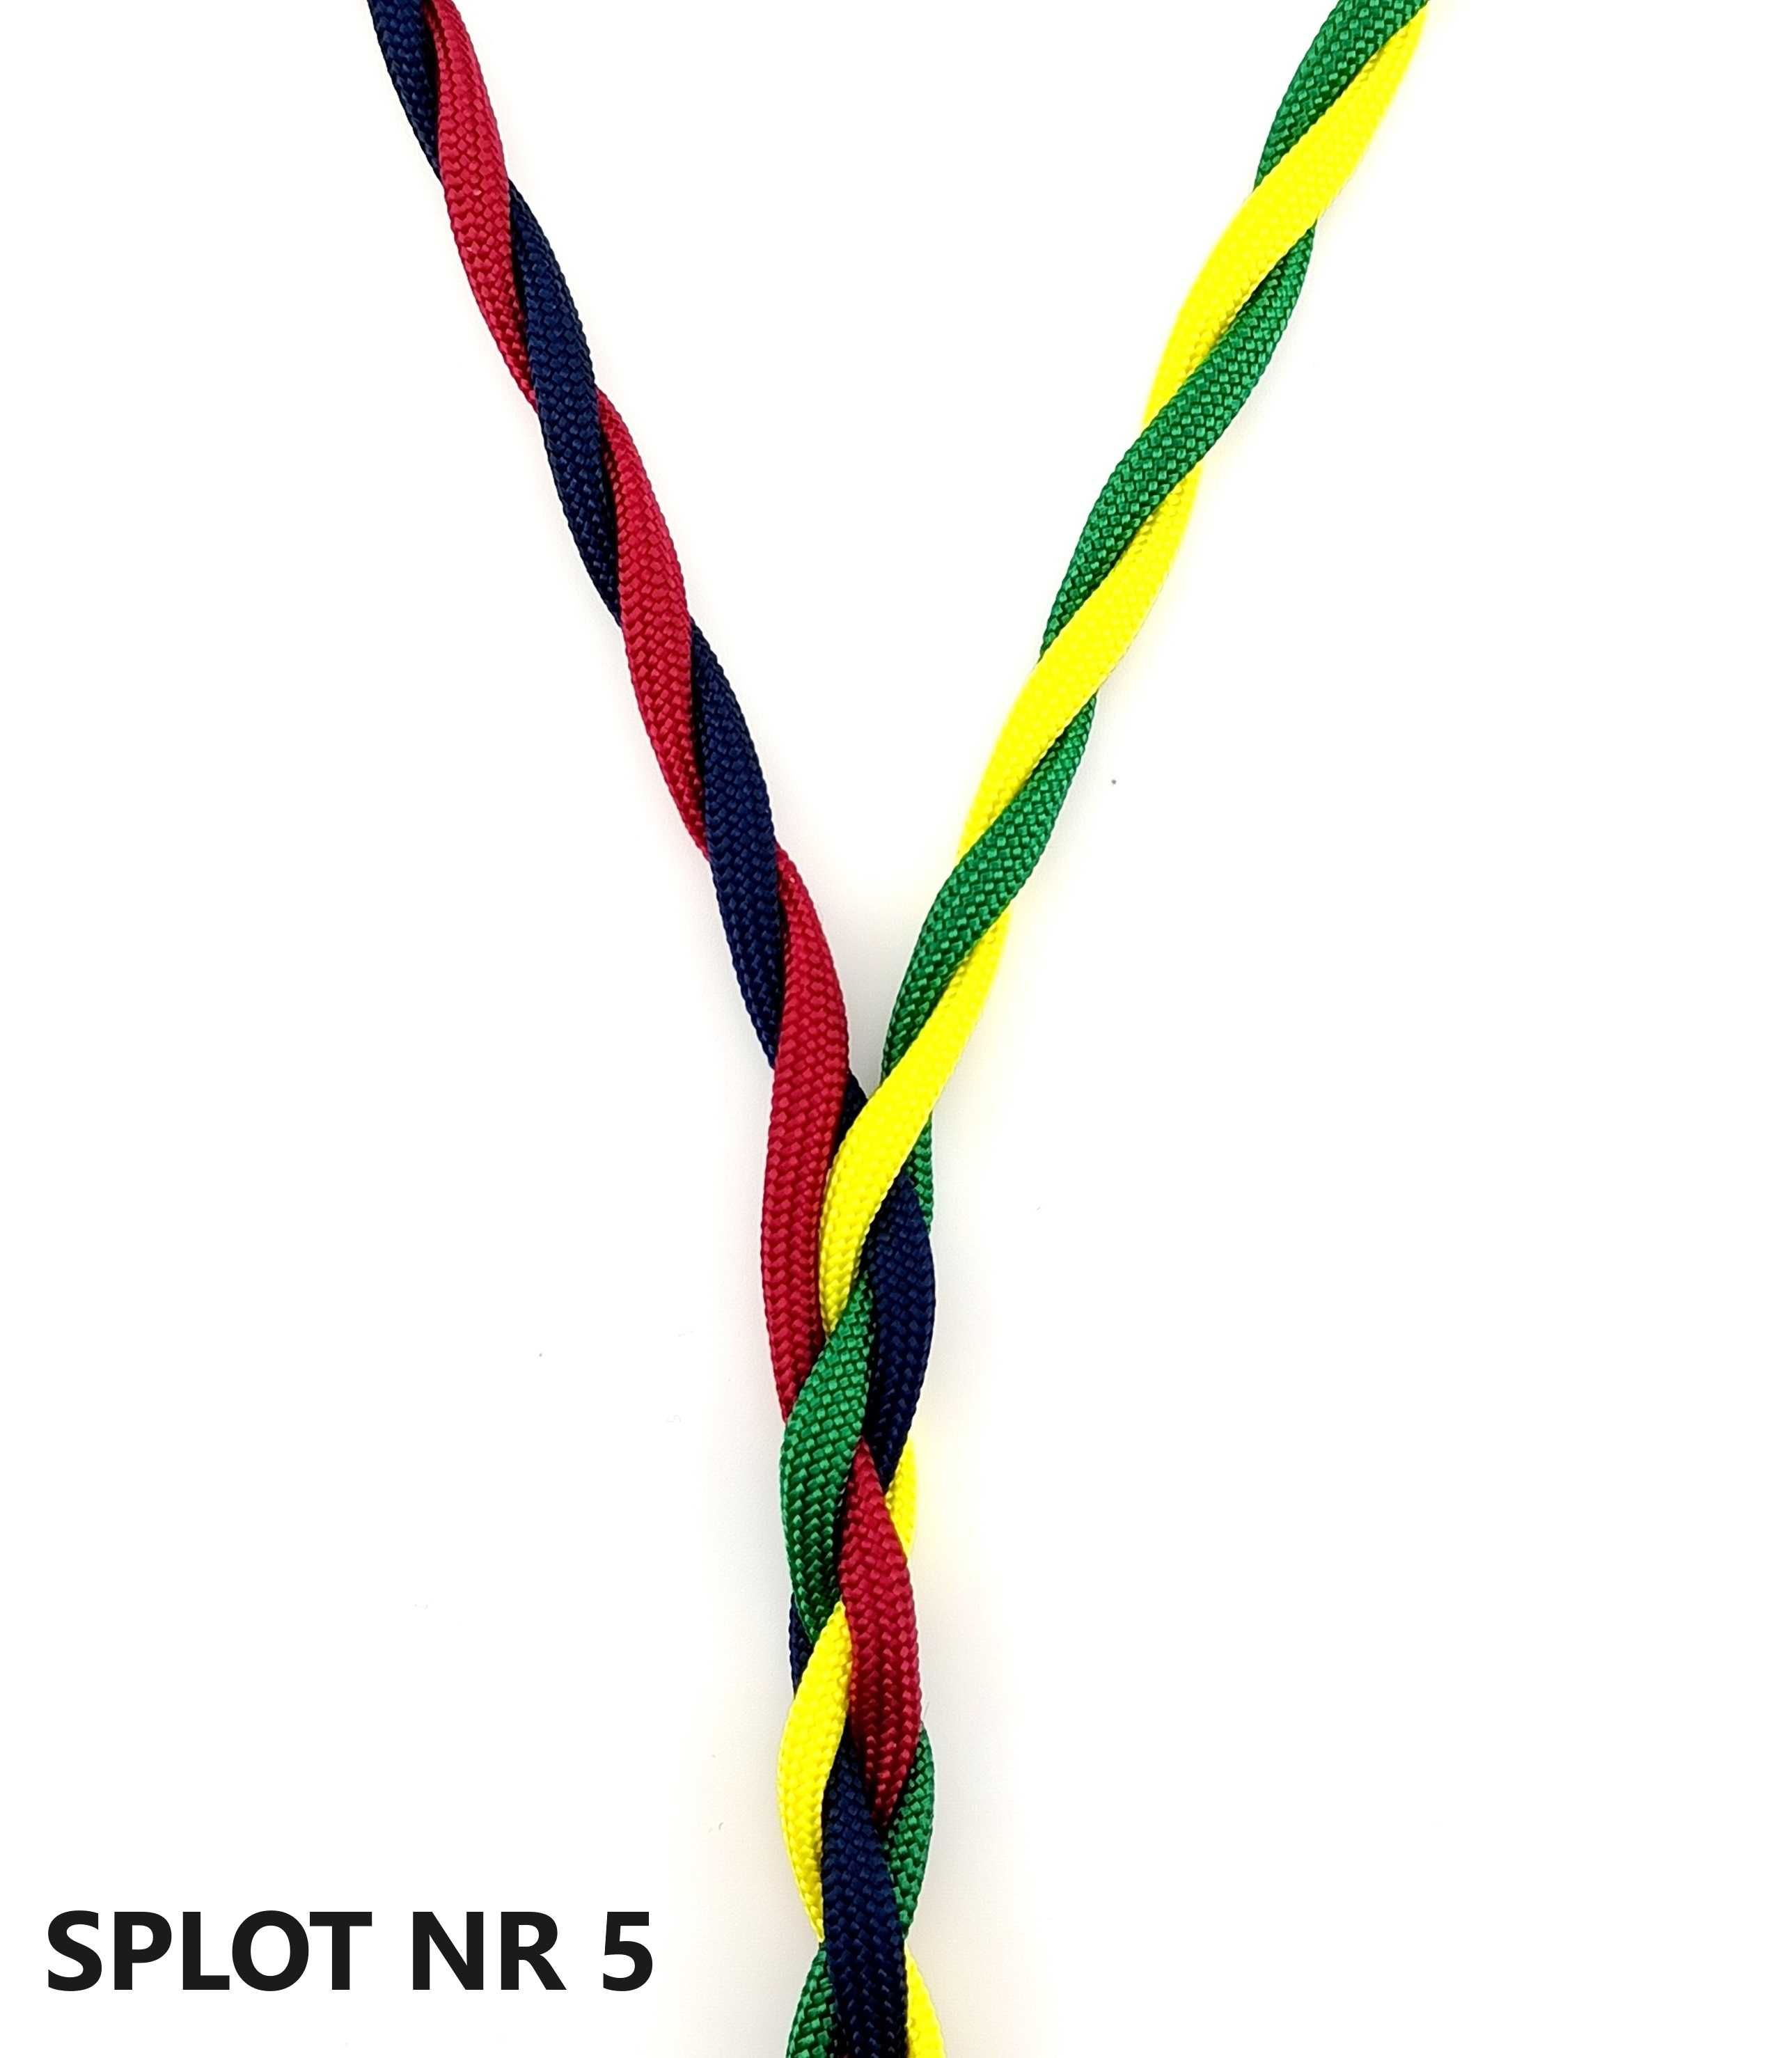 Ręcznie wykonany zbalansowany kabel do SONY MDR Z7 M2 warianty 4,4mm